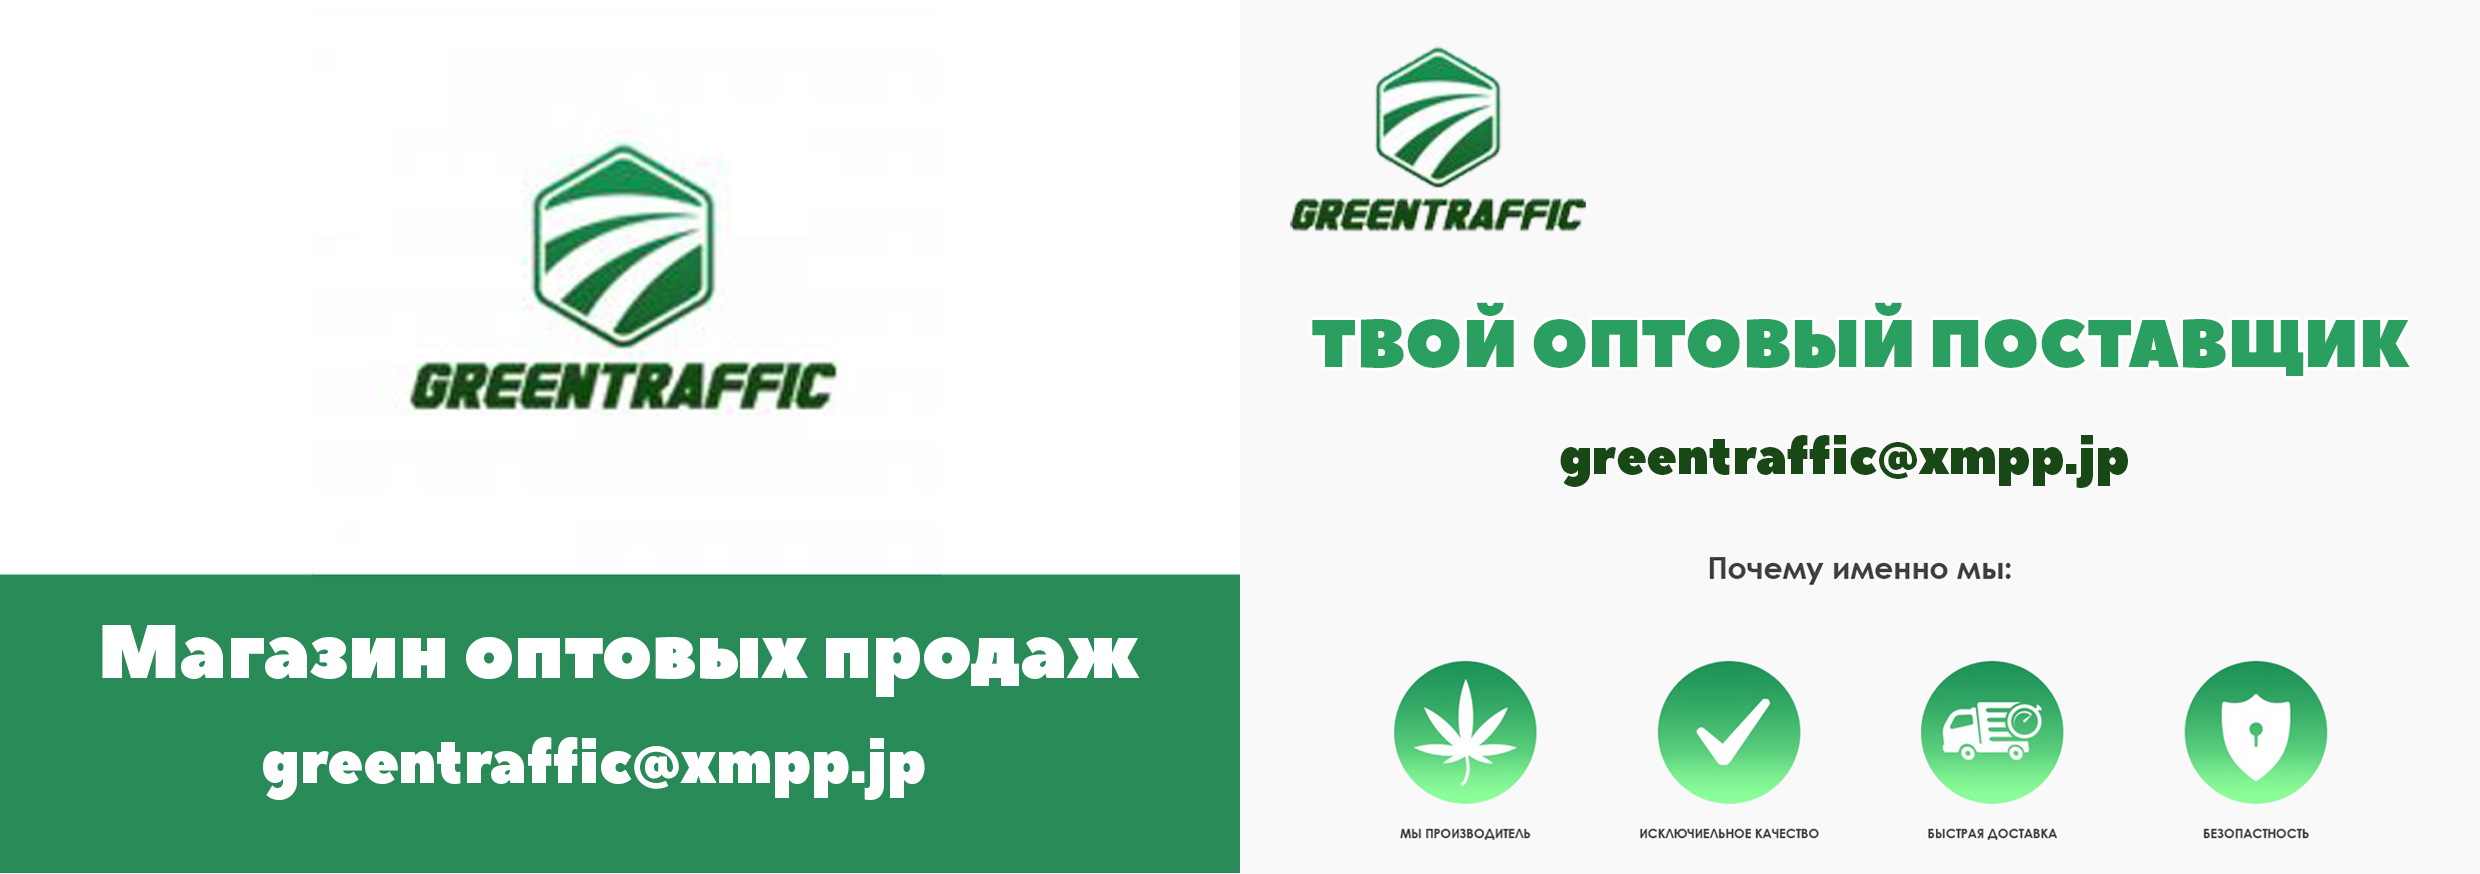 Стикеры GreenTraffic.jpg